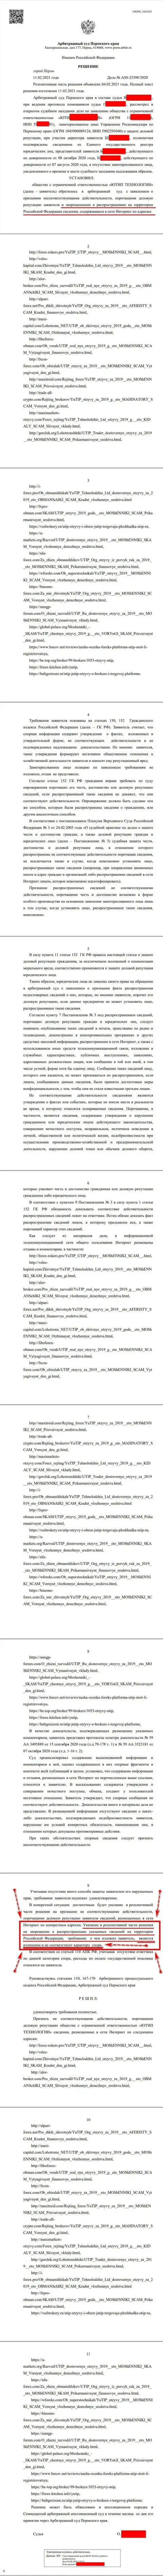 Решение Арбитражного суда по судебному иску шулеров UTIP Org в отношении портала Forex-Brokers.Pro